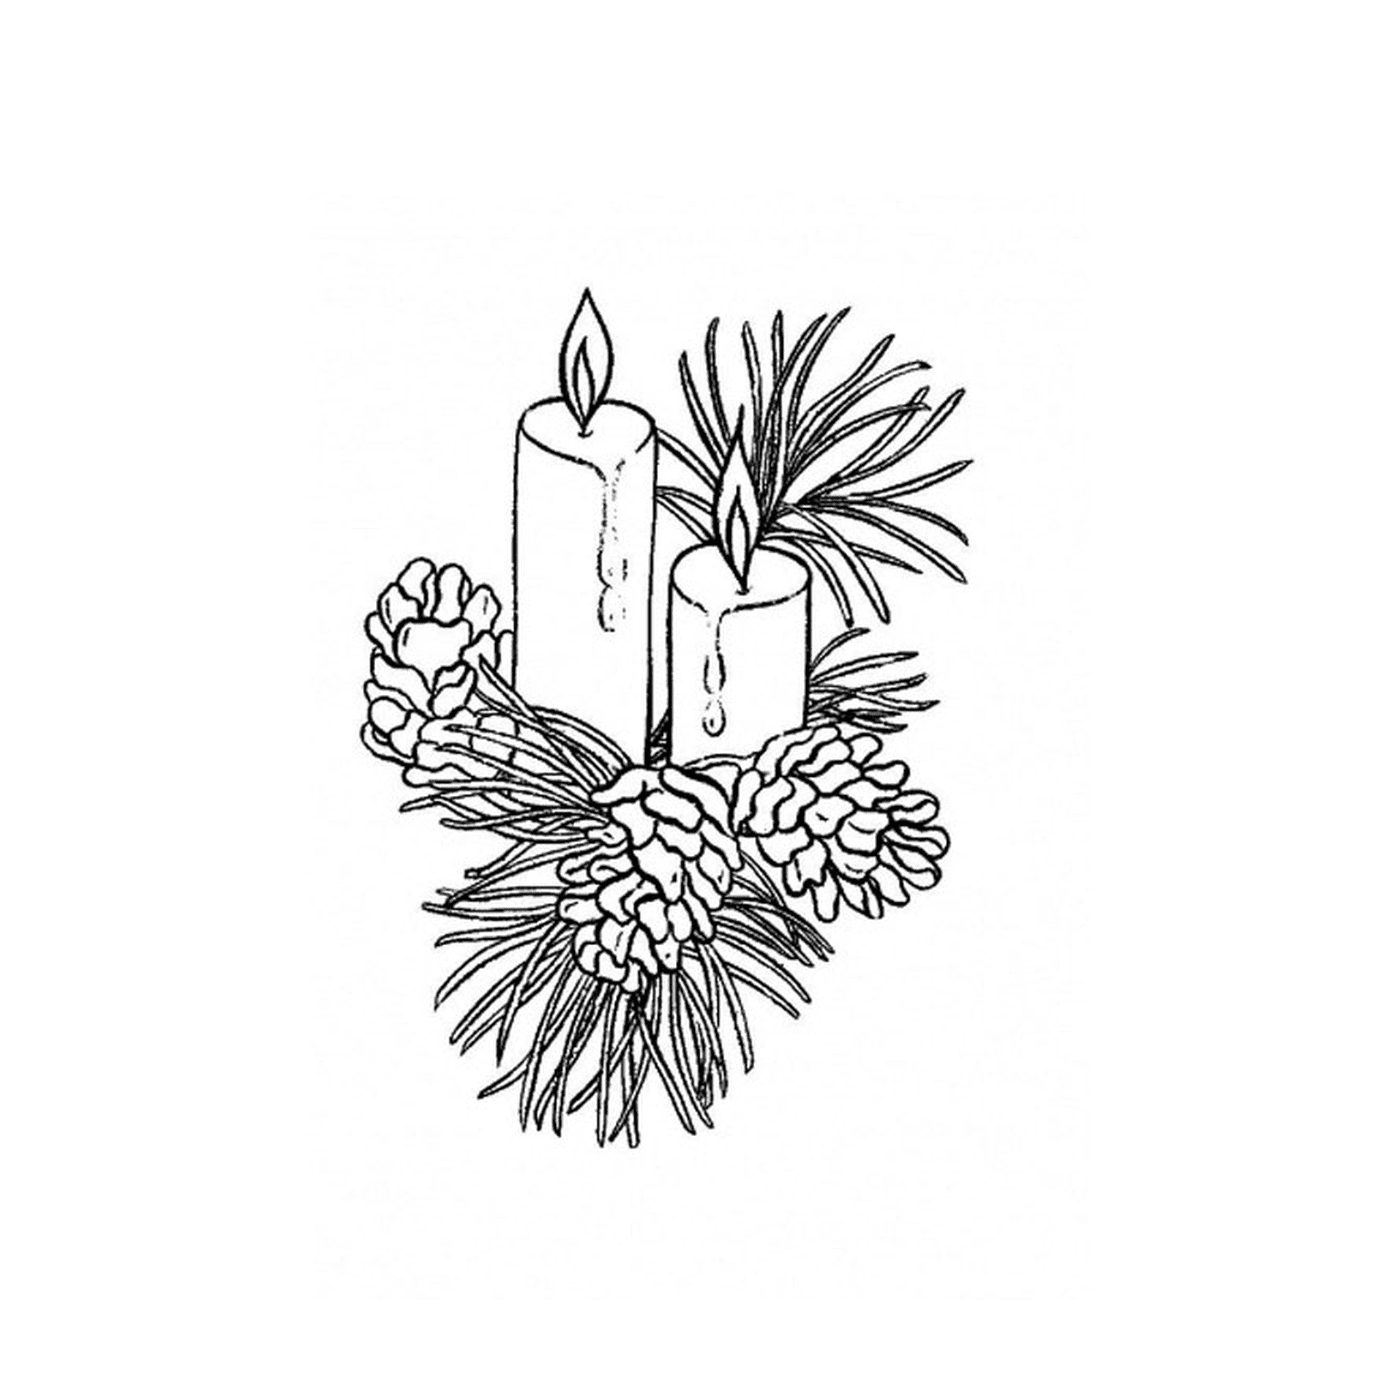  Duas velas acesas em um ramo de pinheiro 